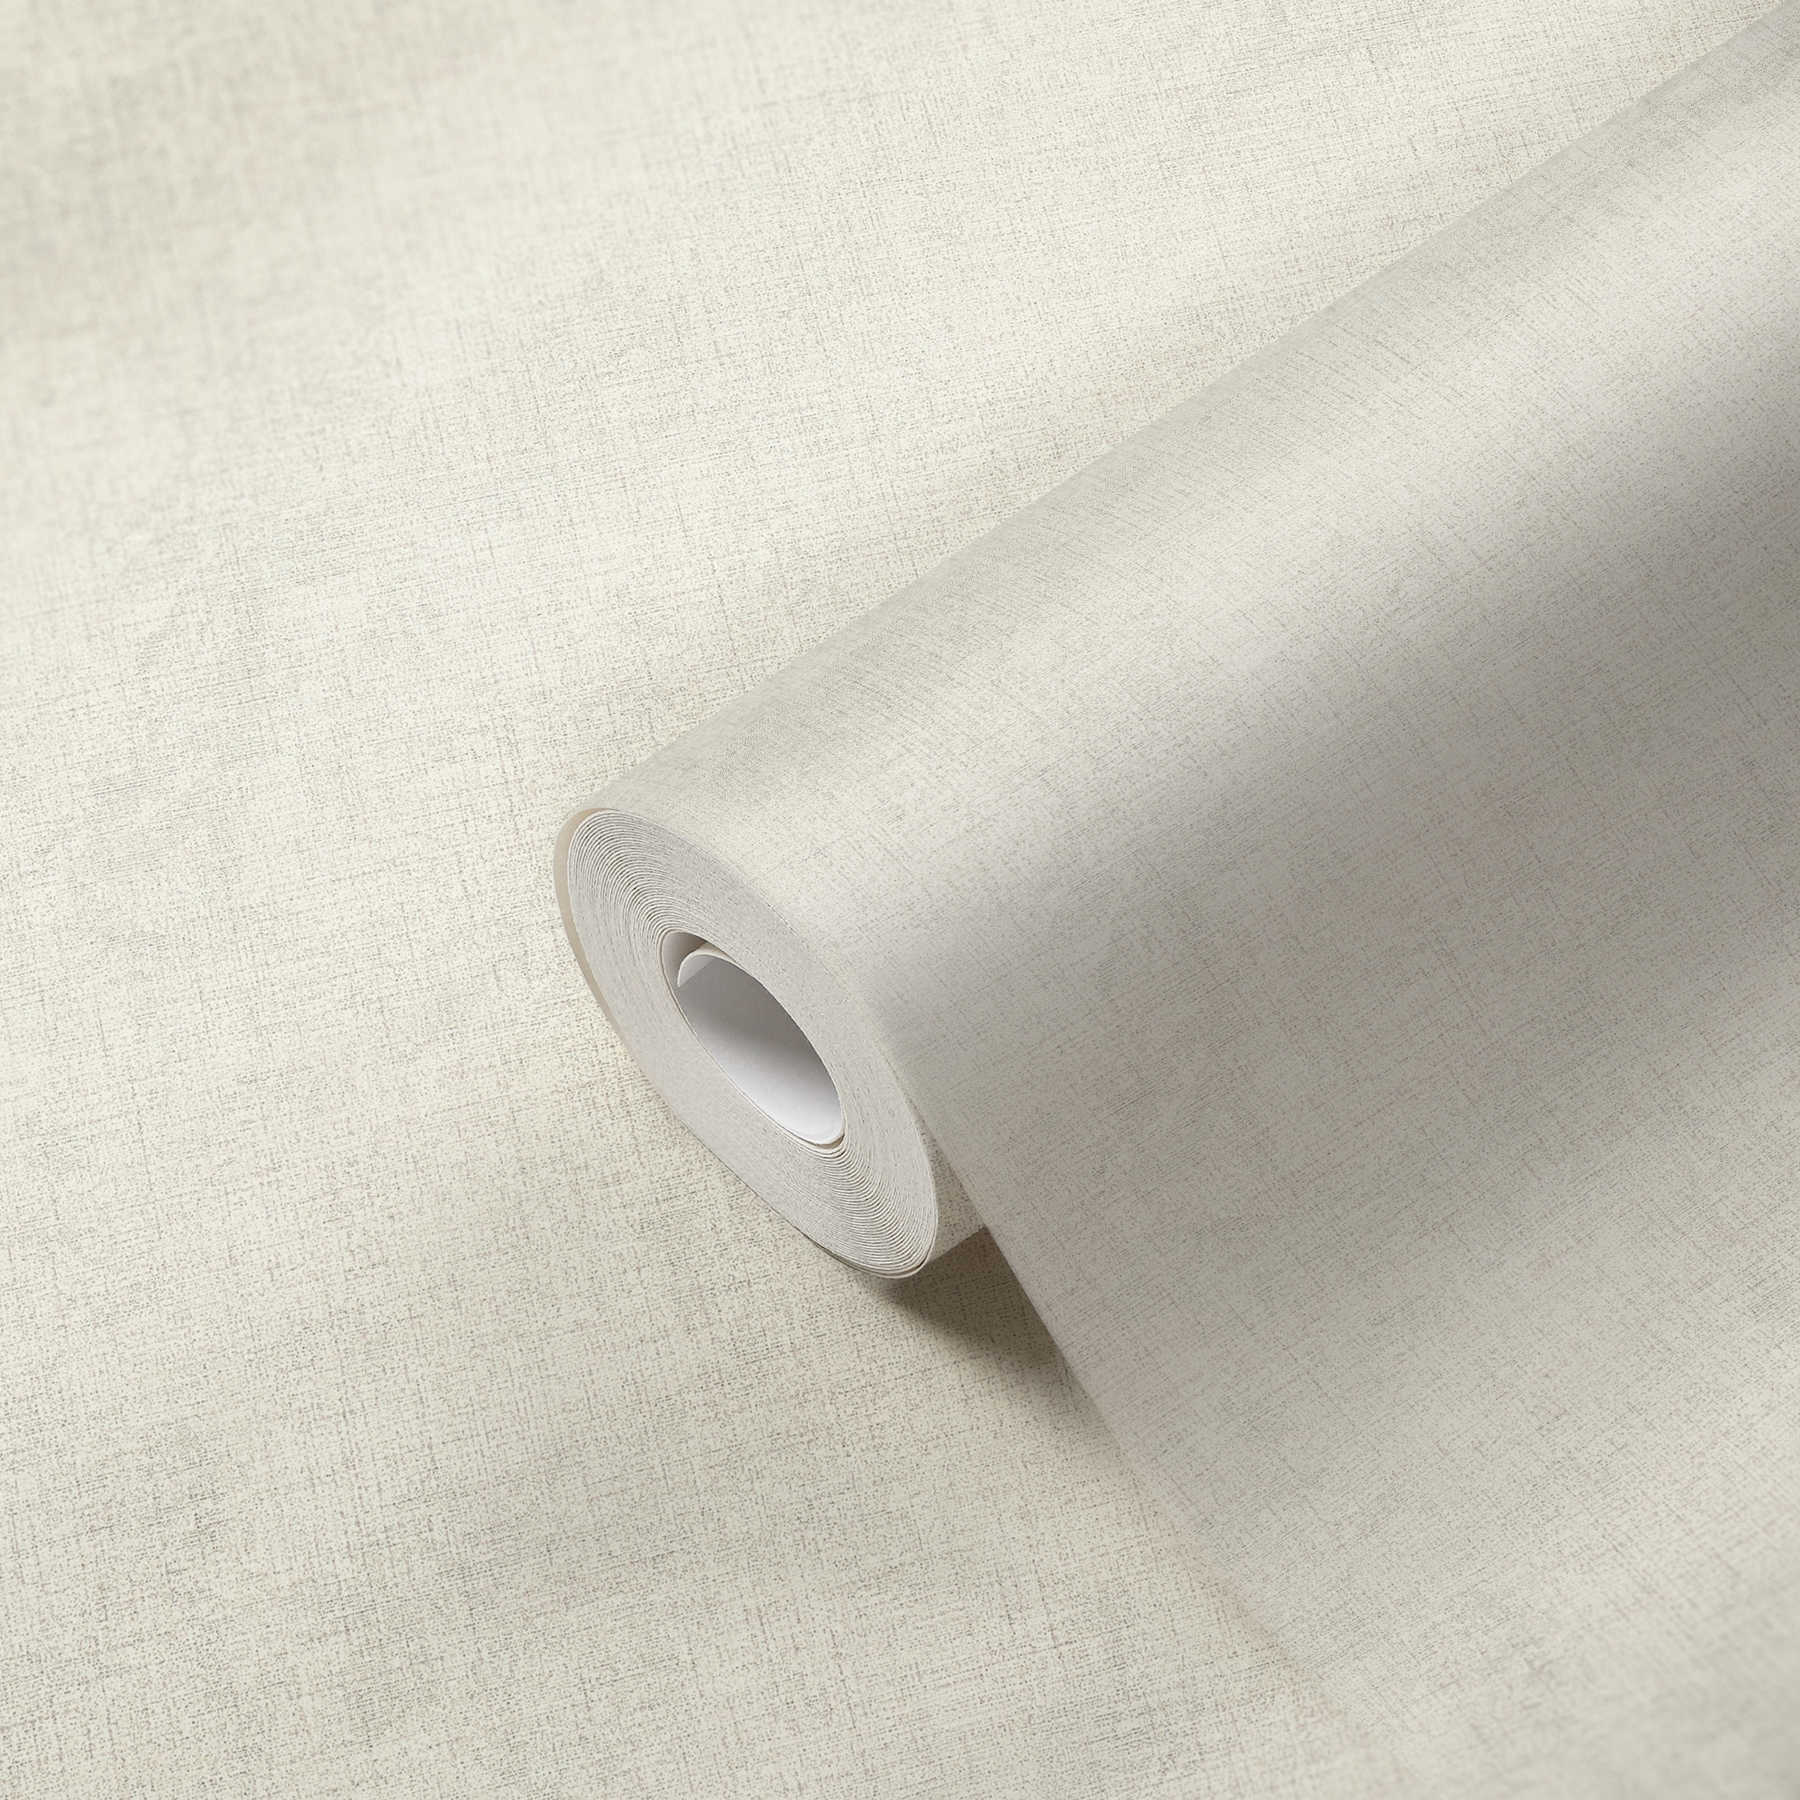             Non-woven wallpaper plain with textile look - cream
        